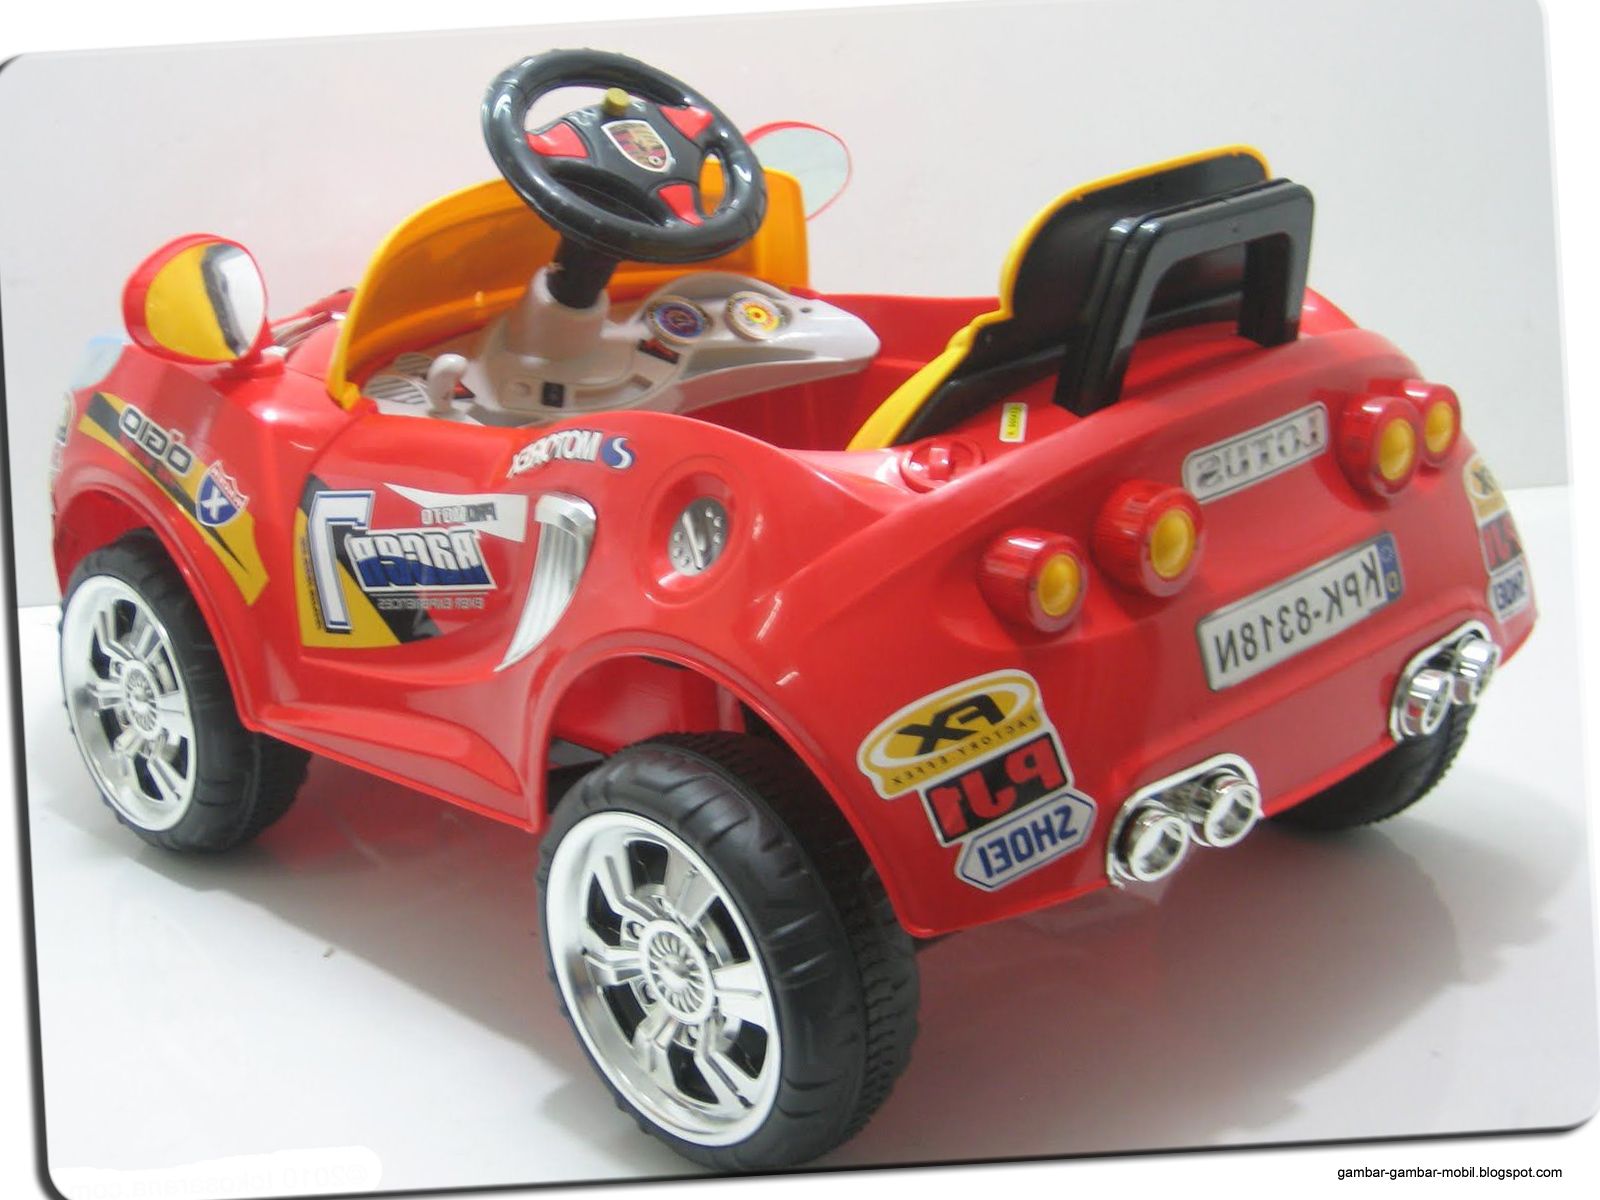  Mobil Mainan Anak Yang Bisa Dinaiki  Gambar Gambar Mobil 